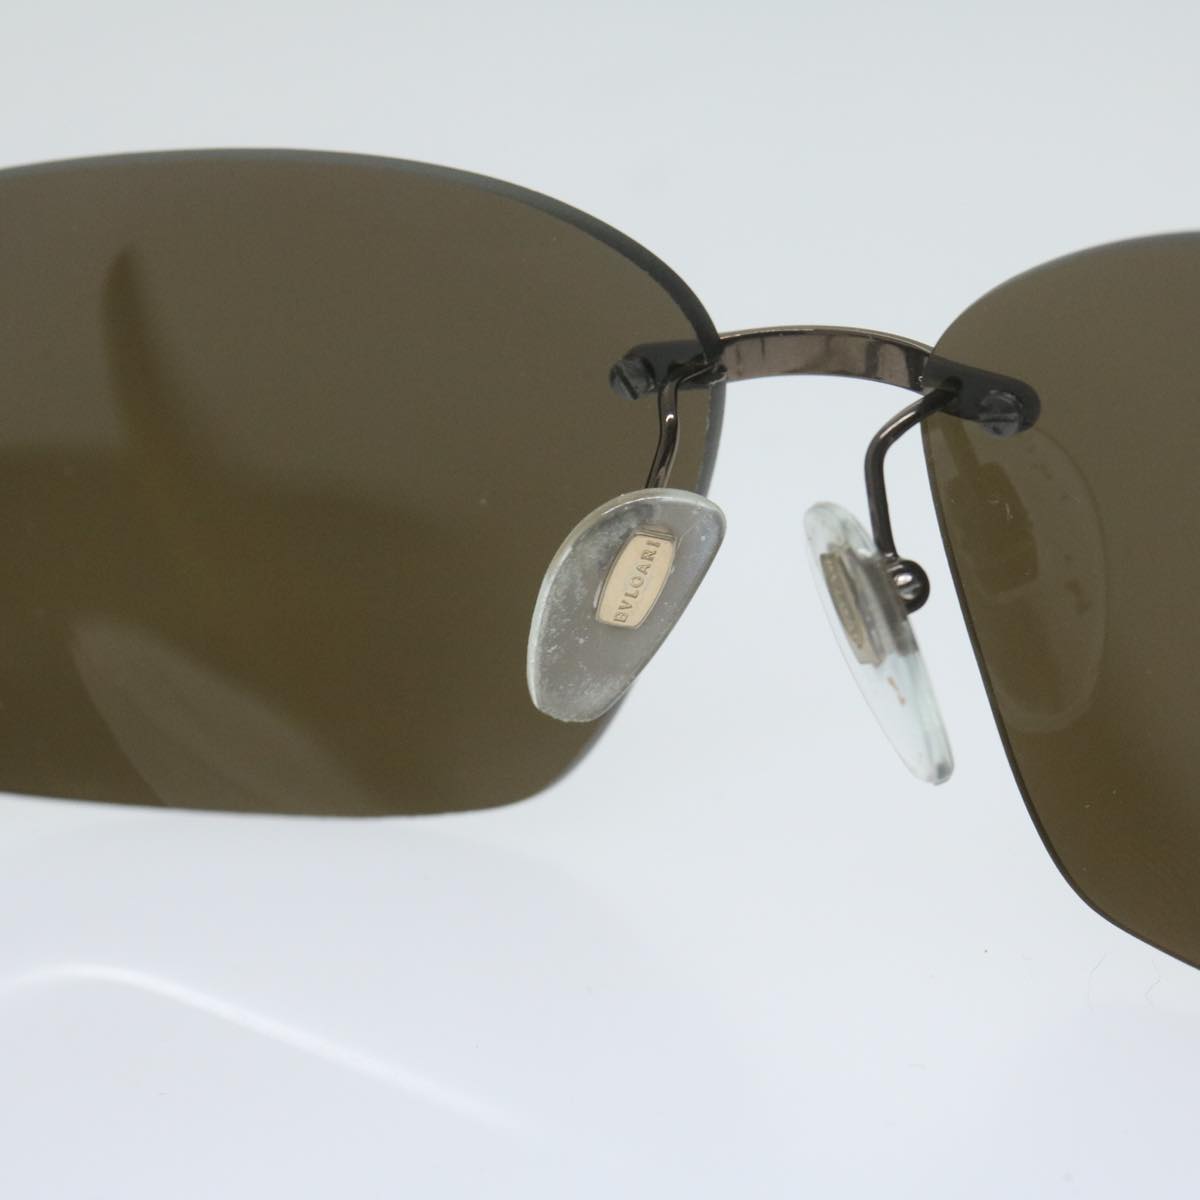 BVLGARI Sunglasses Plastic Brown Auth ep2777